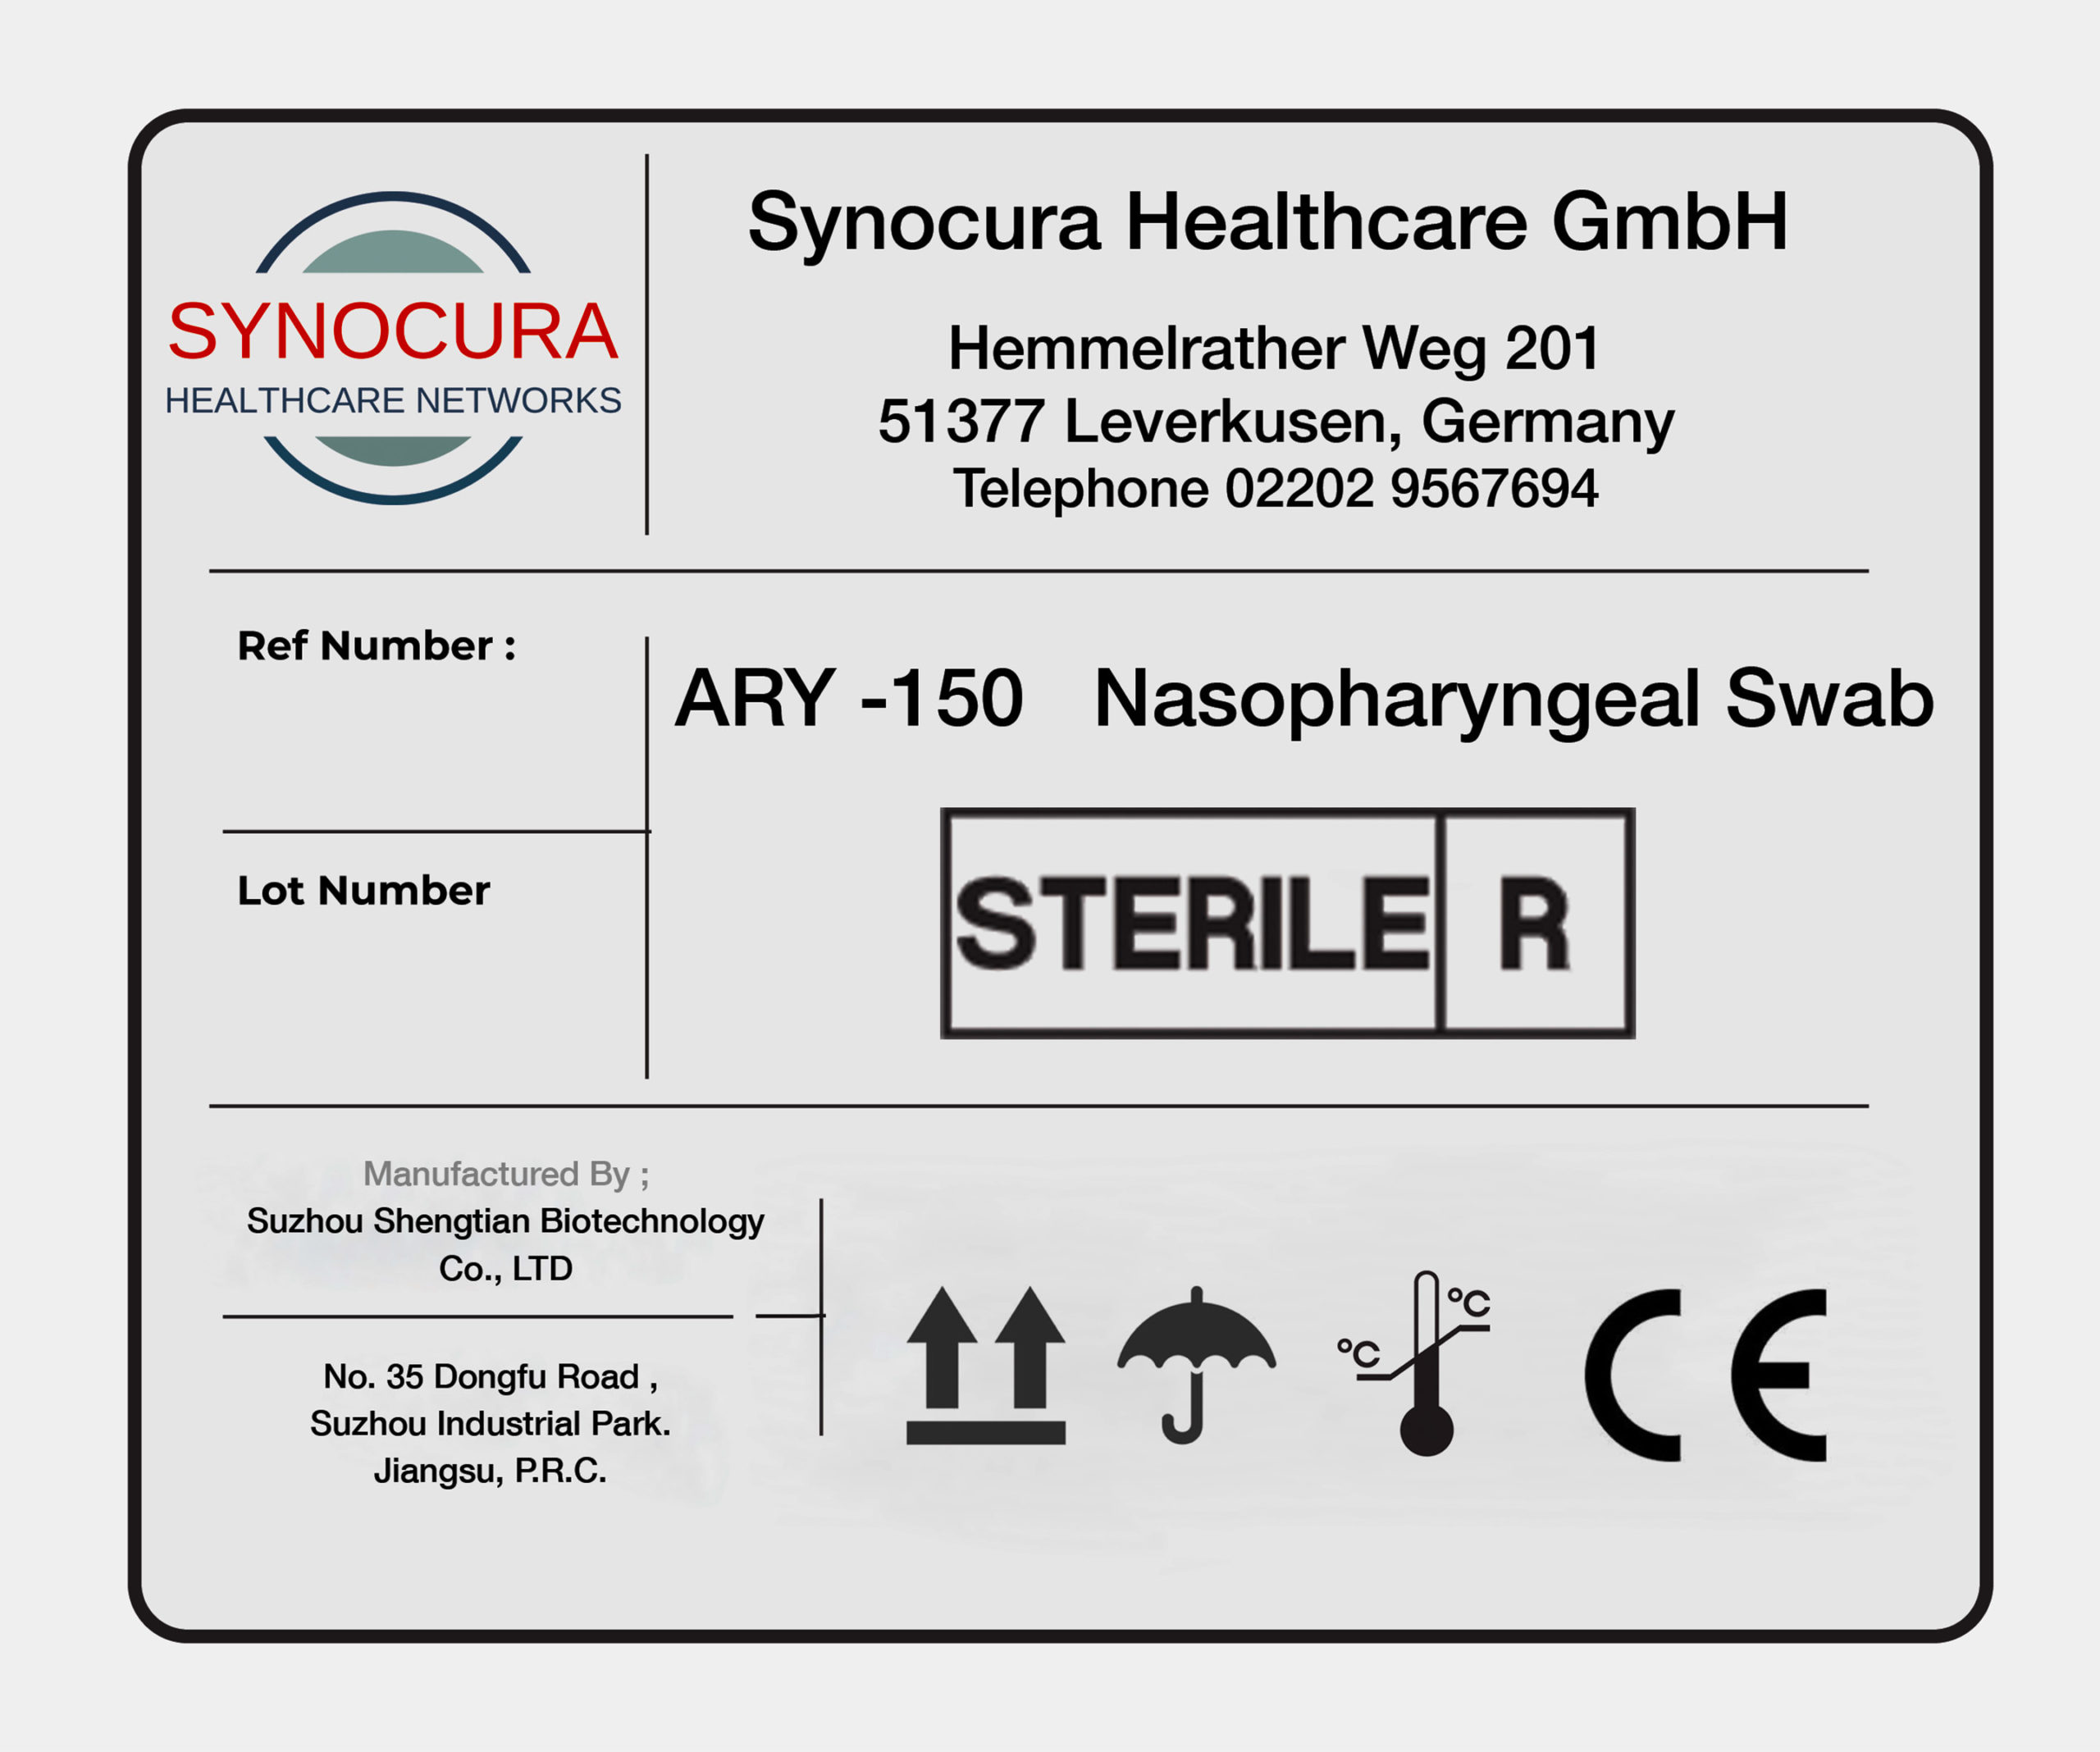 Synocura Healthcare GmbH